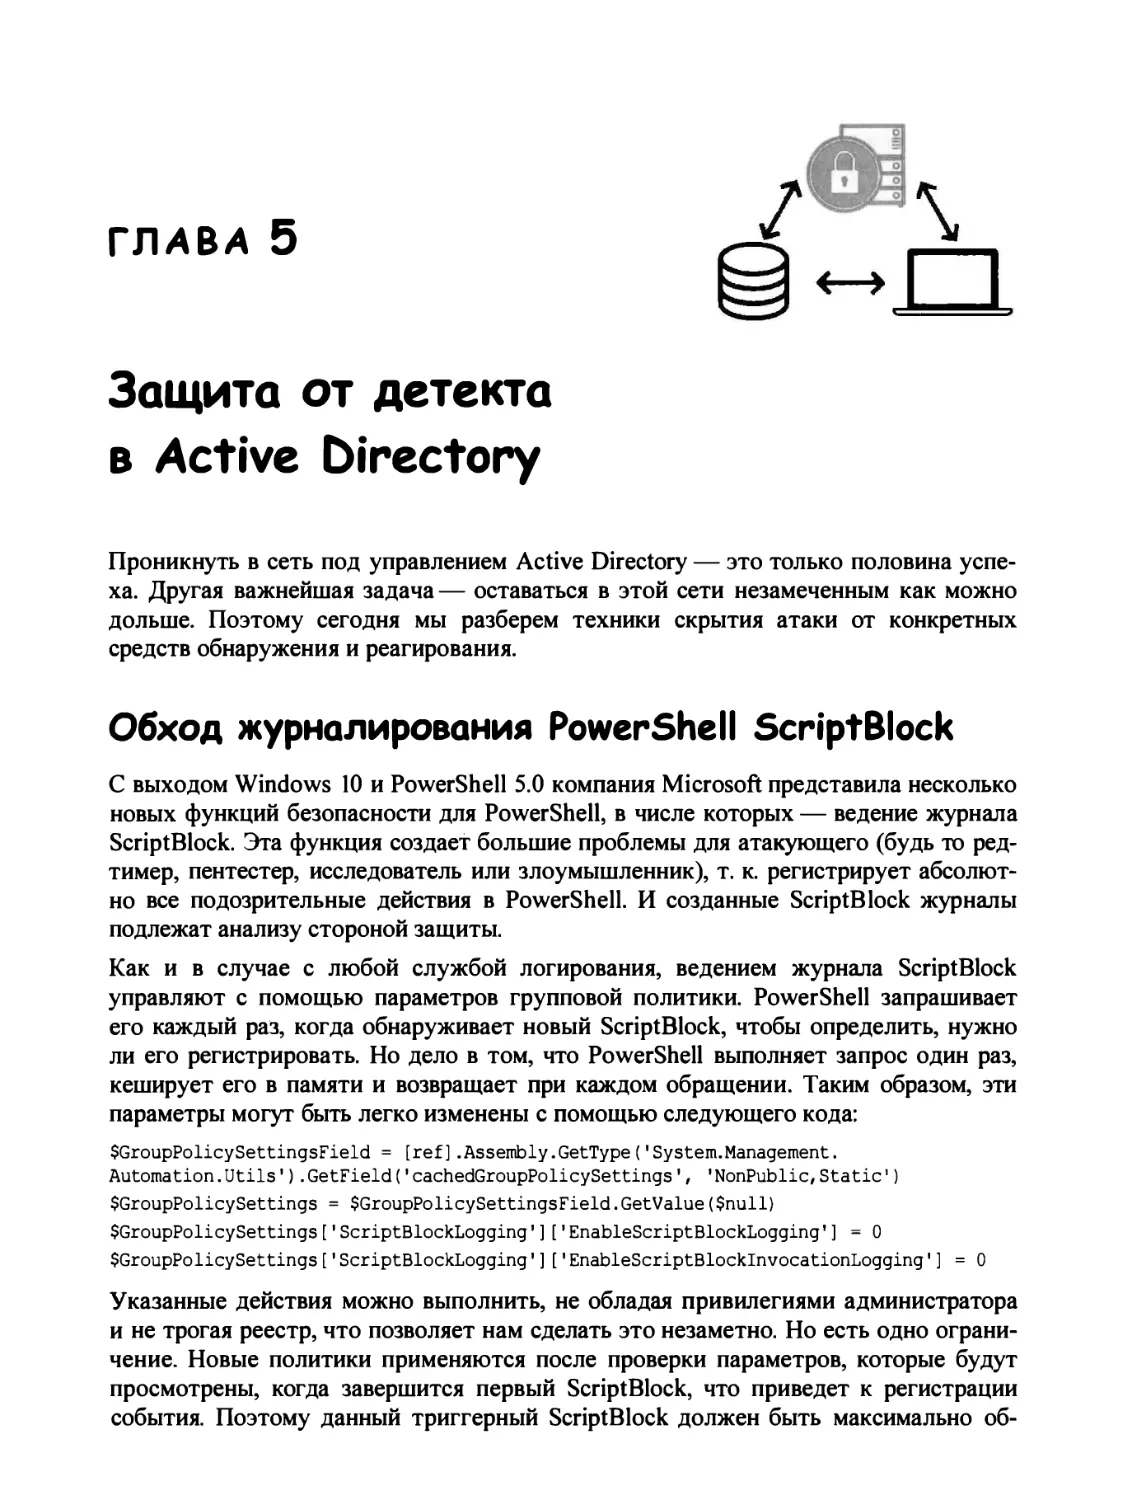 Глава 5. Защита от детекта в Active Directory
Обход журналирования PowerShell ScriptBlock